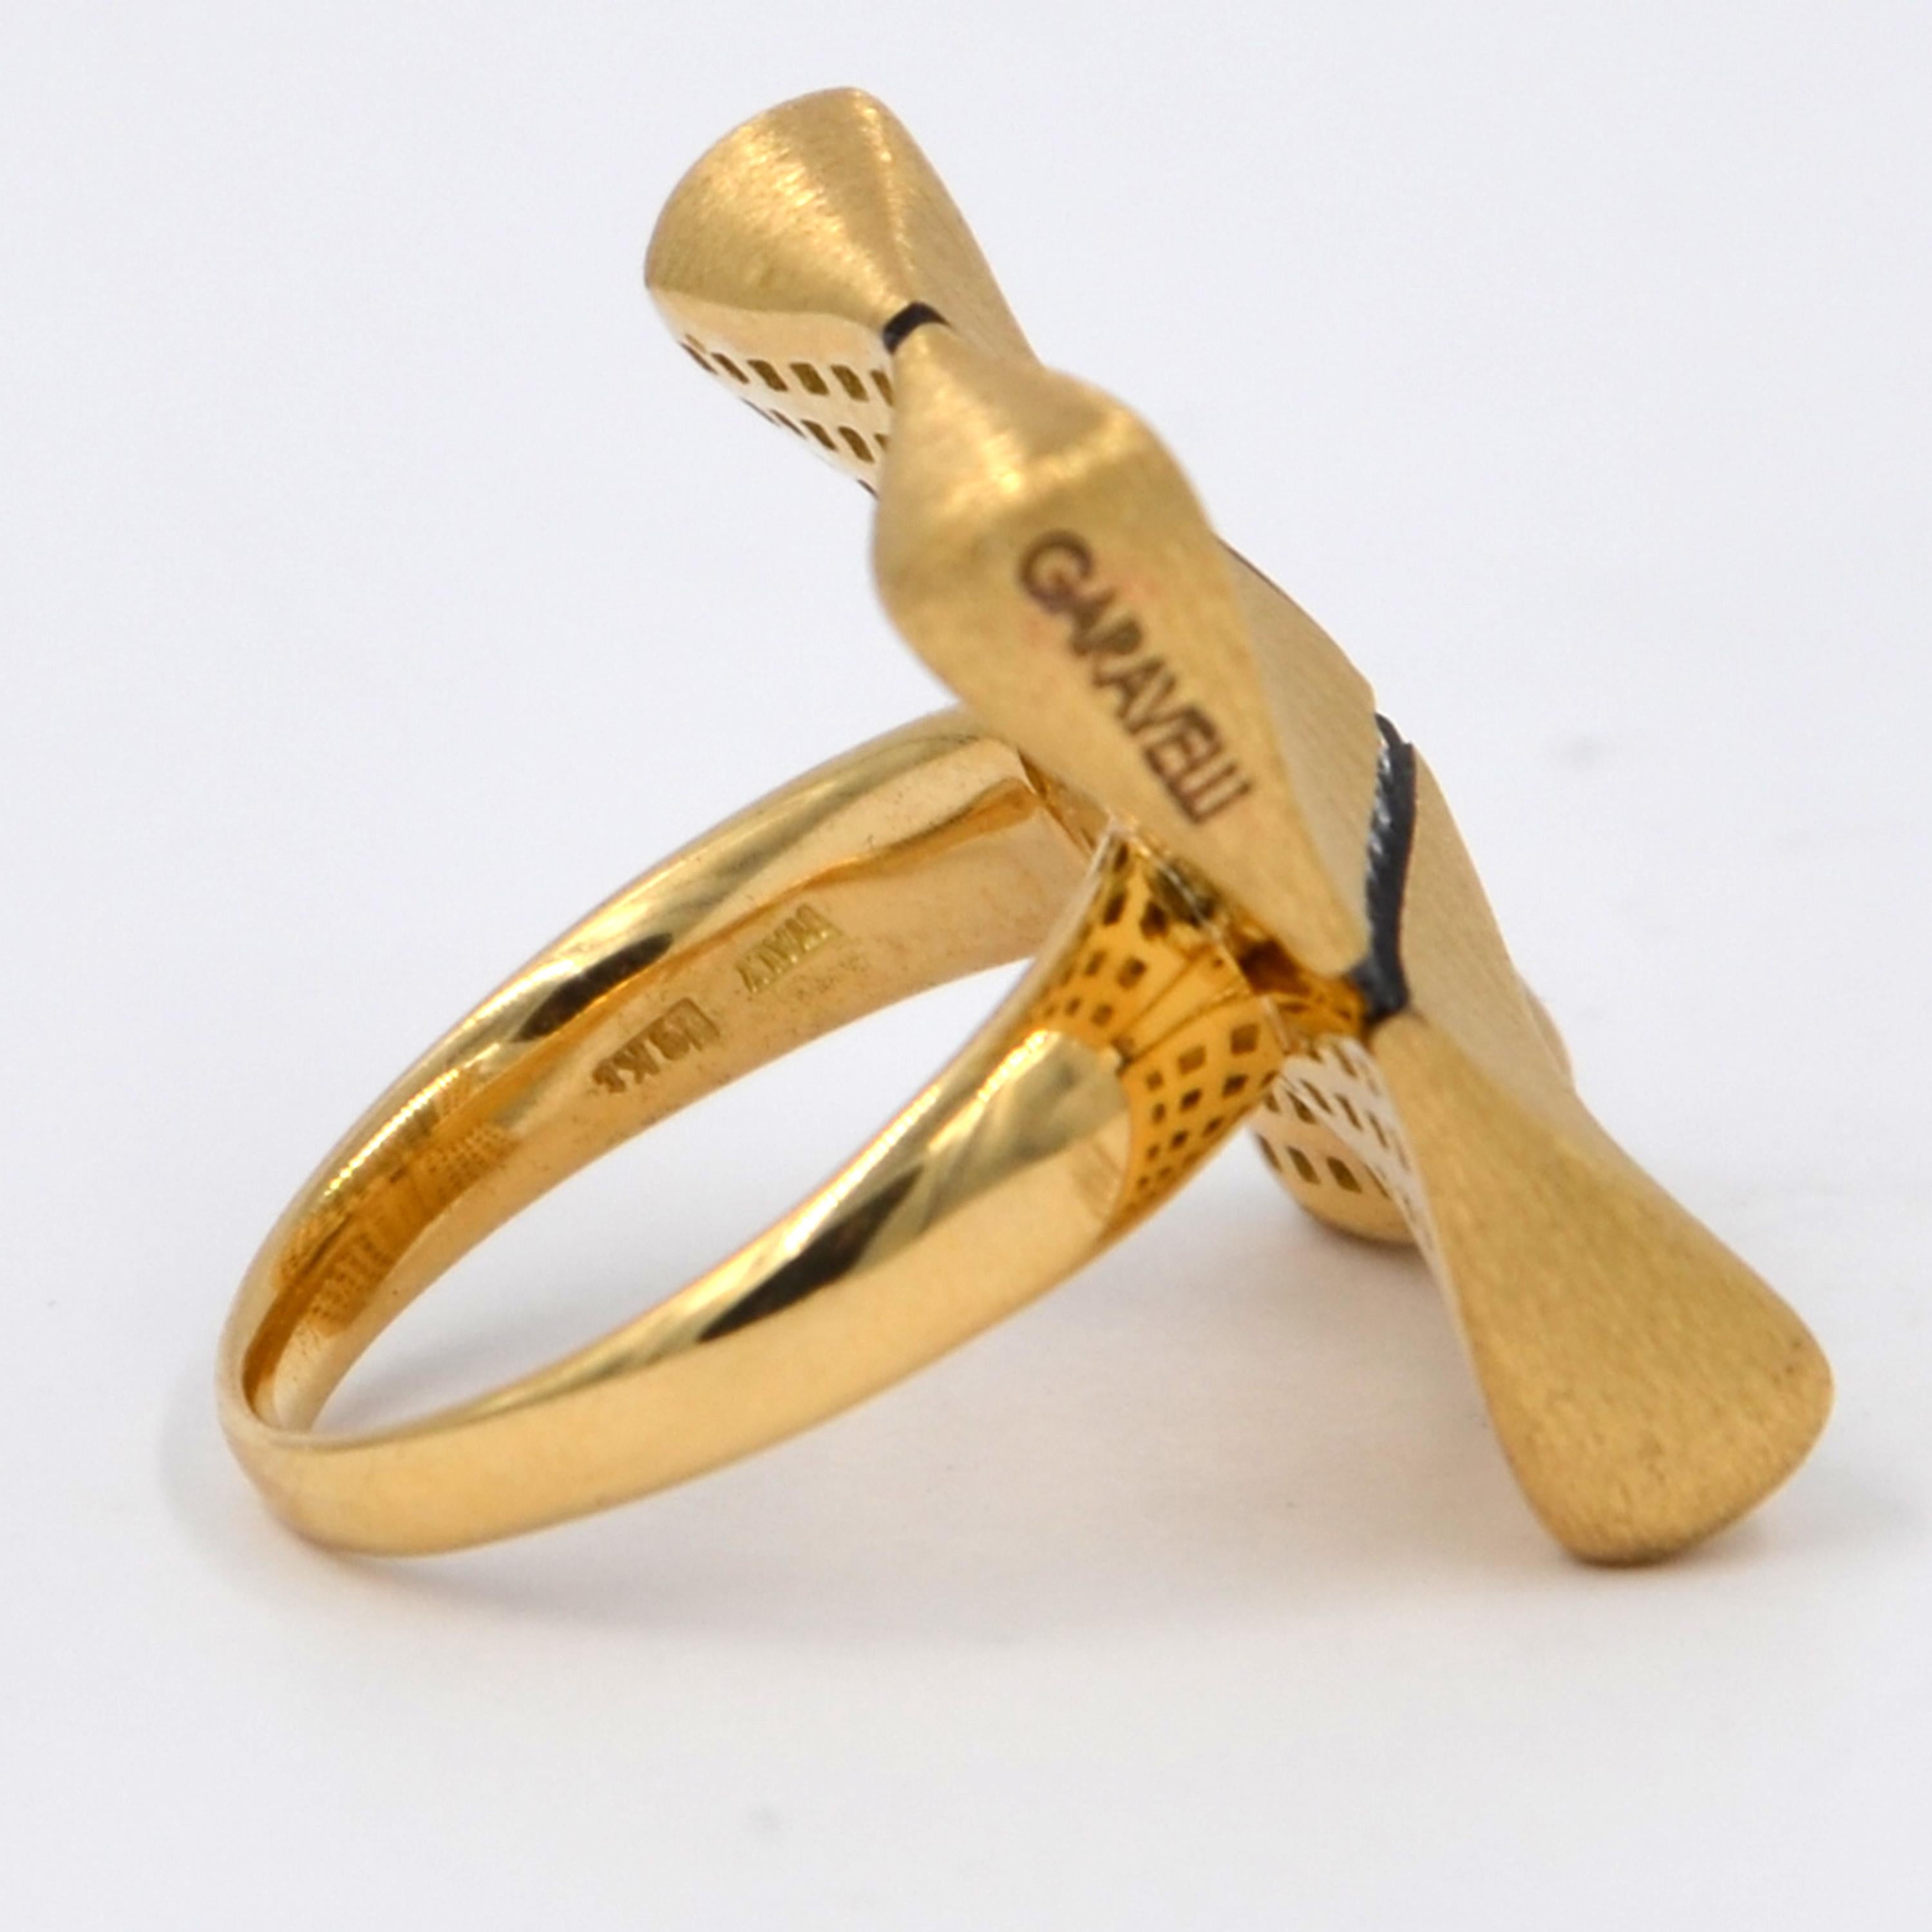 Round Cut Garavelli 18 Karat Rose Gold White Diamonds Award Collection Ring